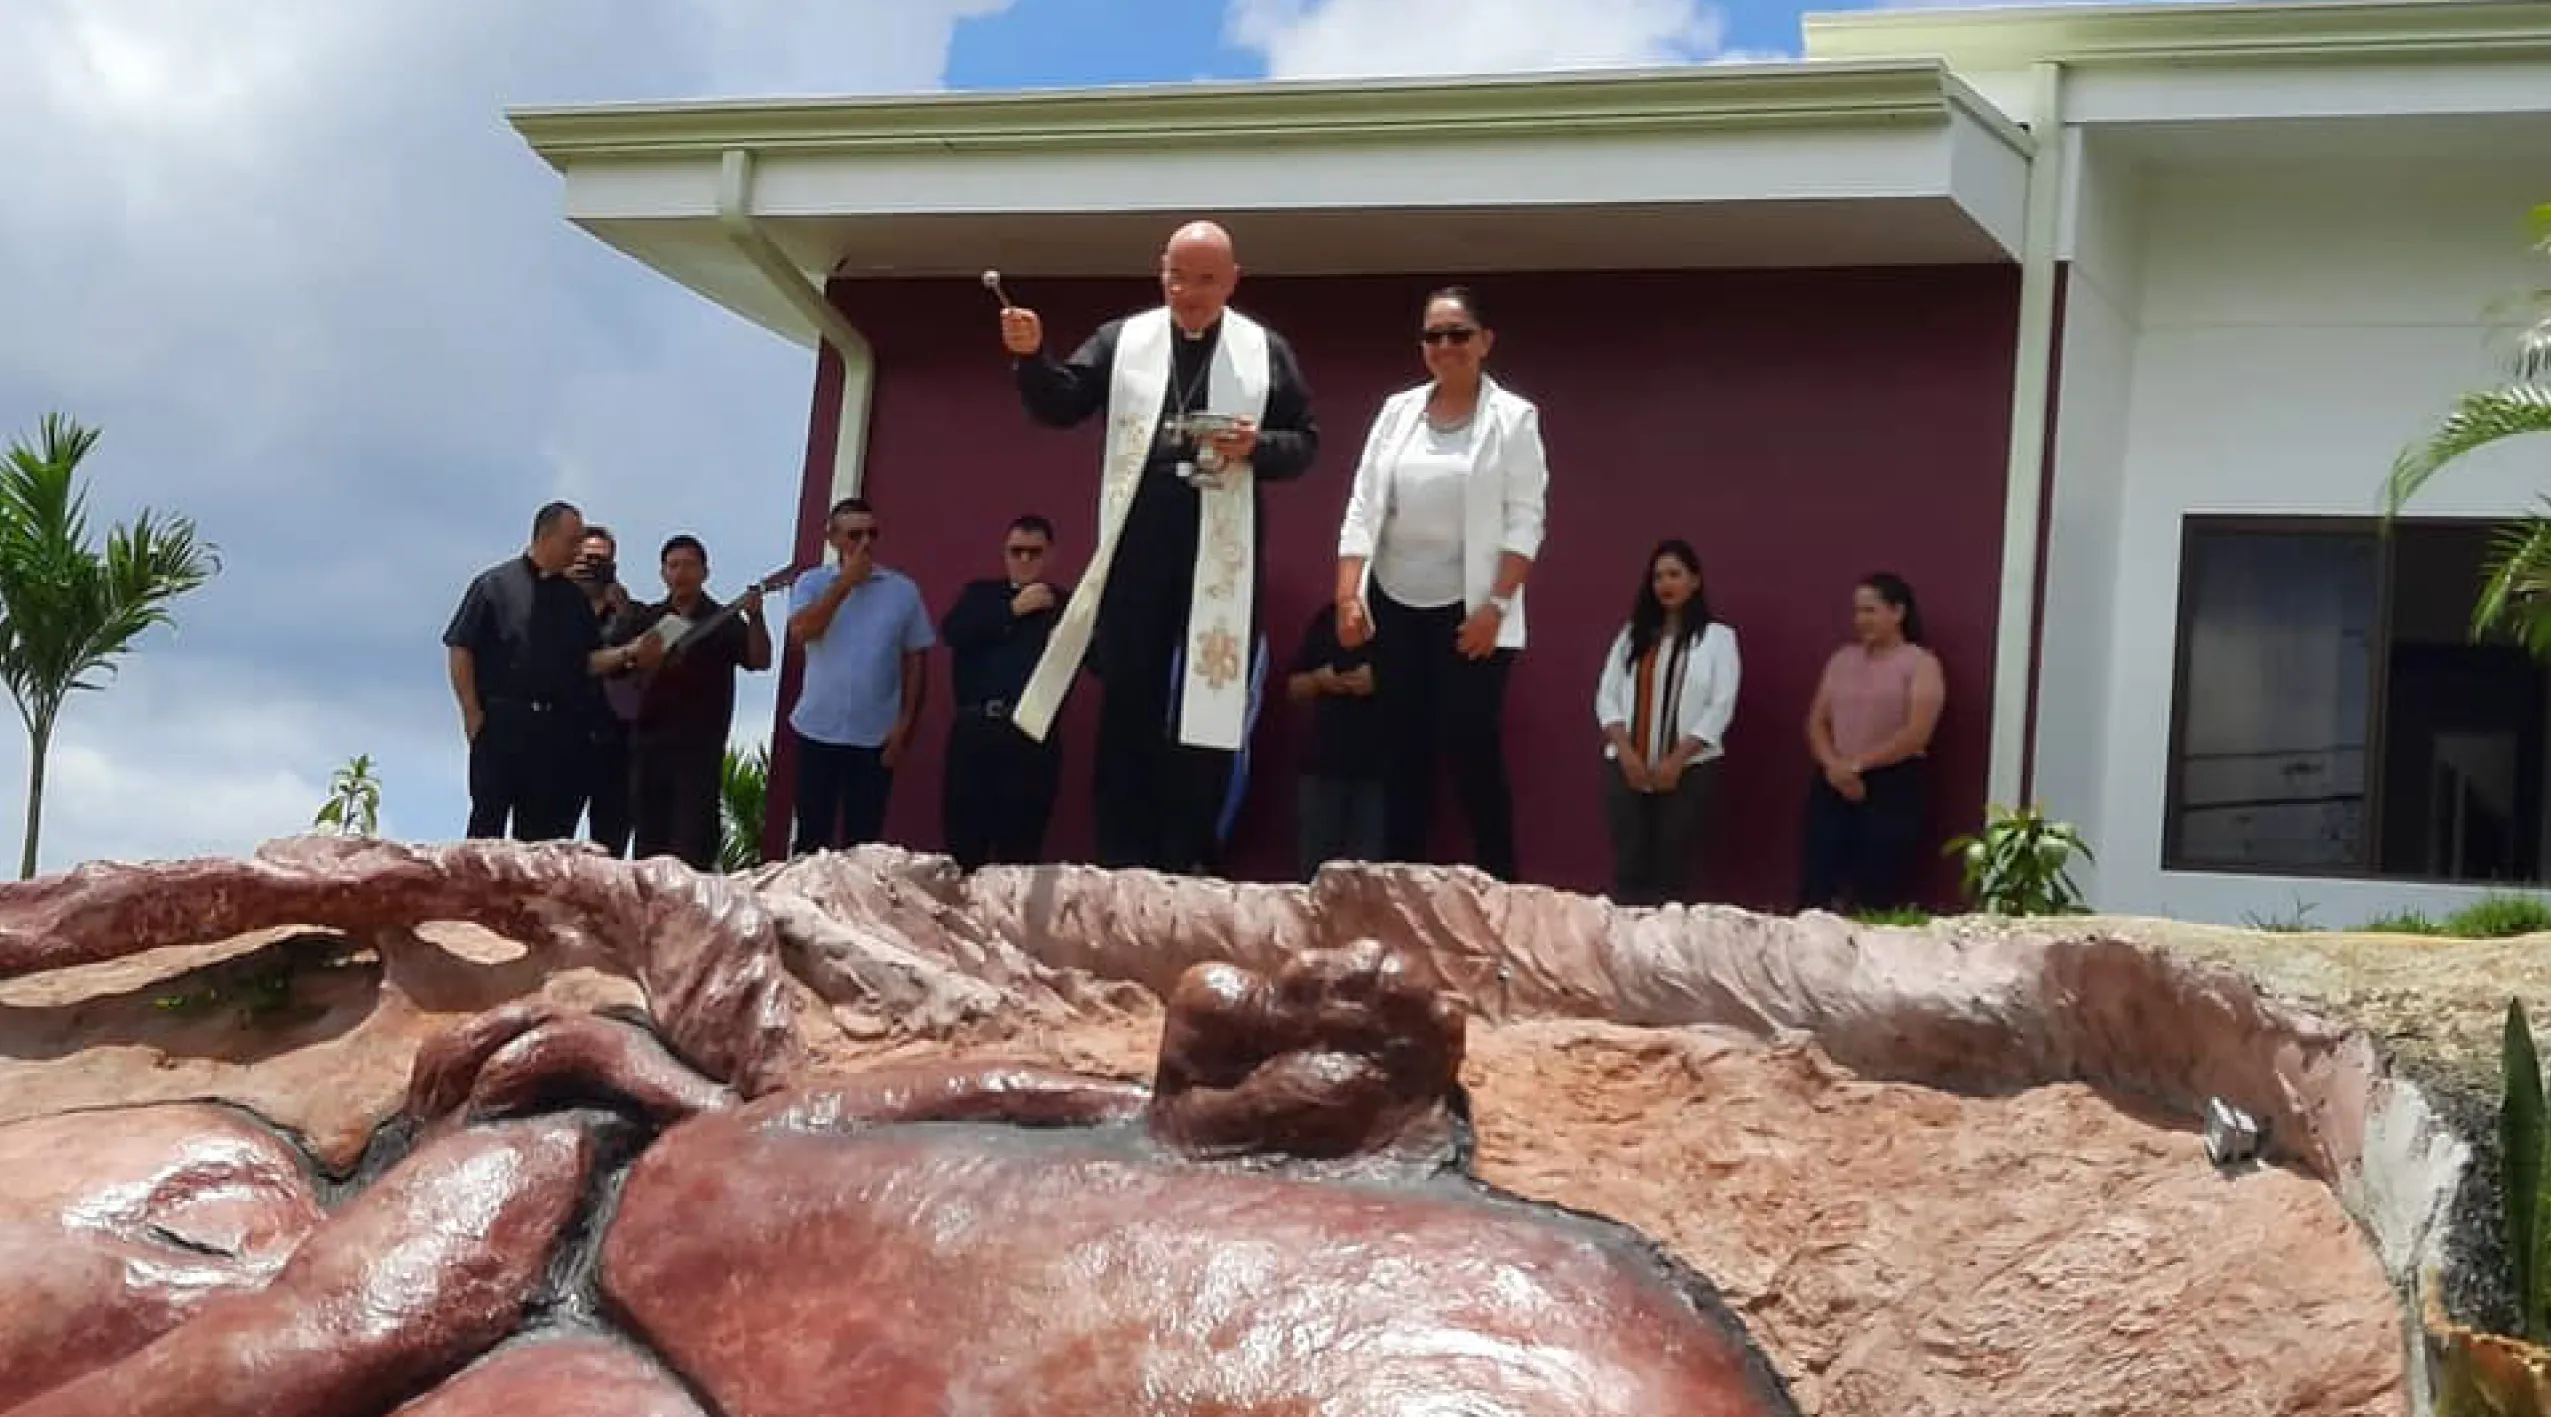 Abren nuevo instituto católico para gestantes y sus familias en Costa Rica